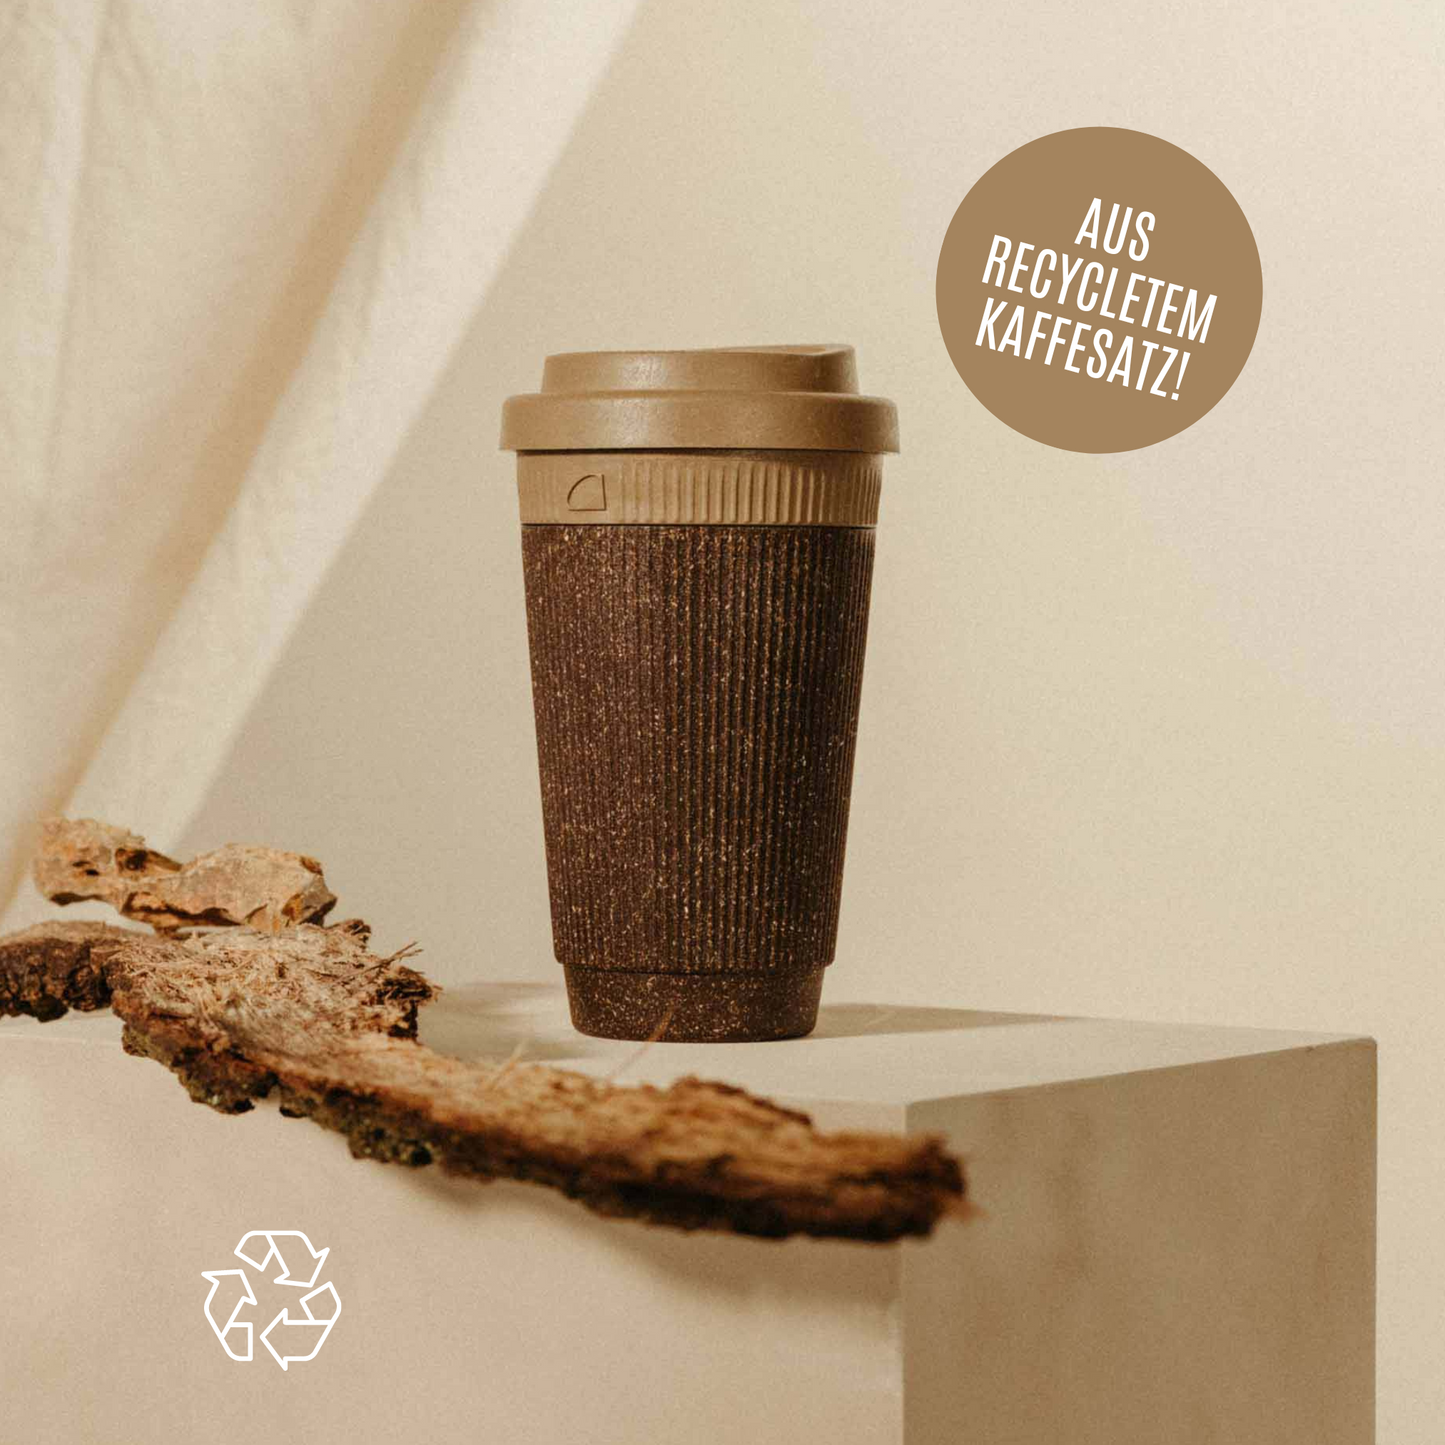 Weducer Cup - To-Go-Becher aus recyceltem Kaffeesatz